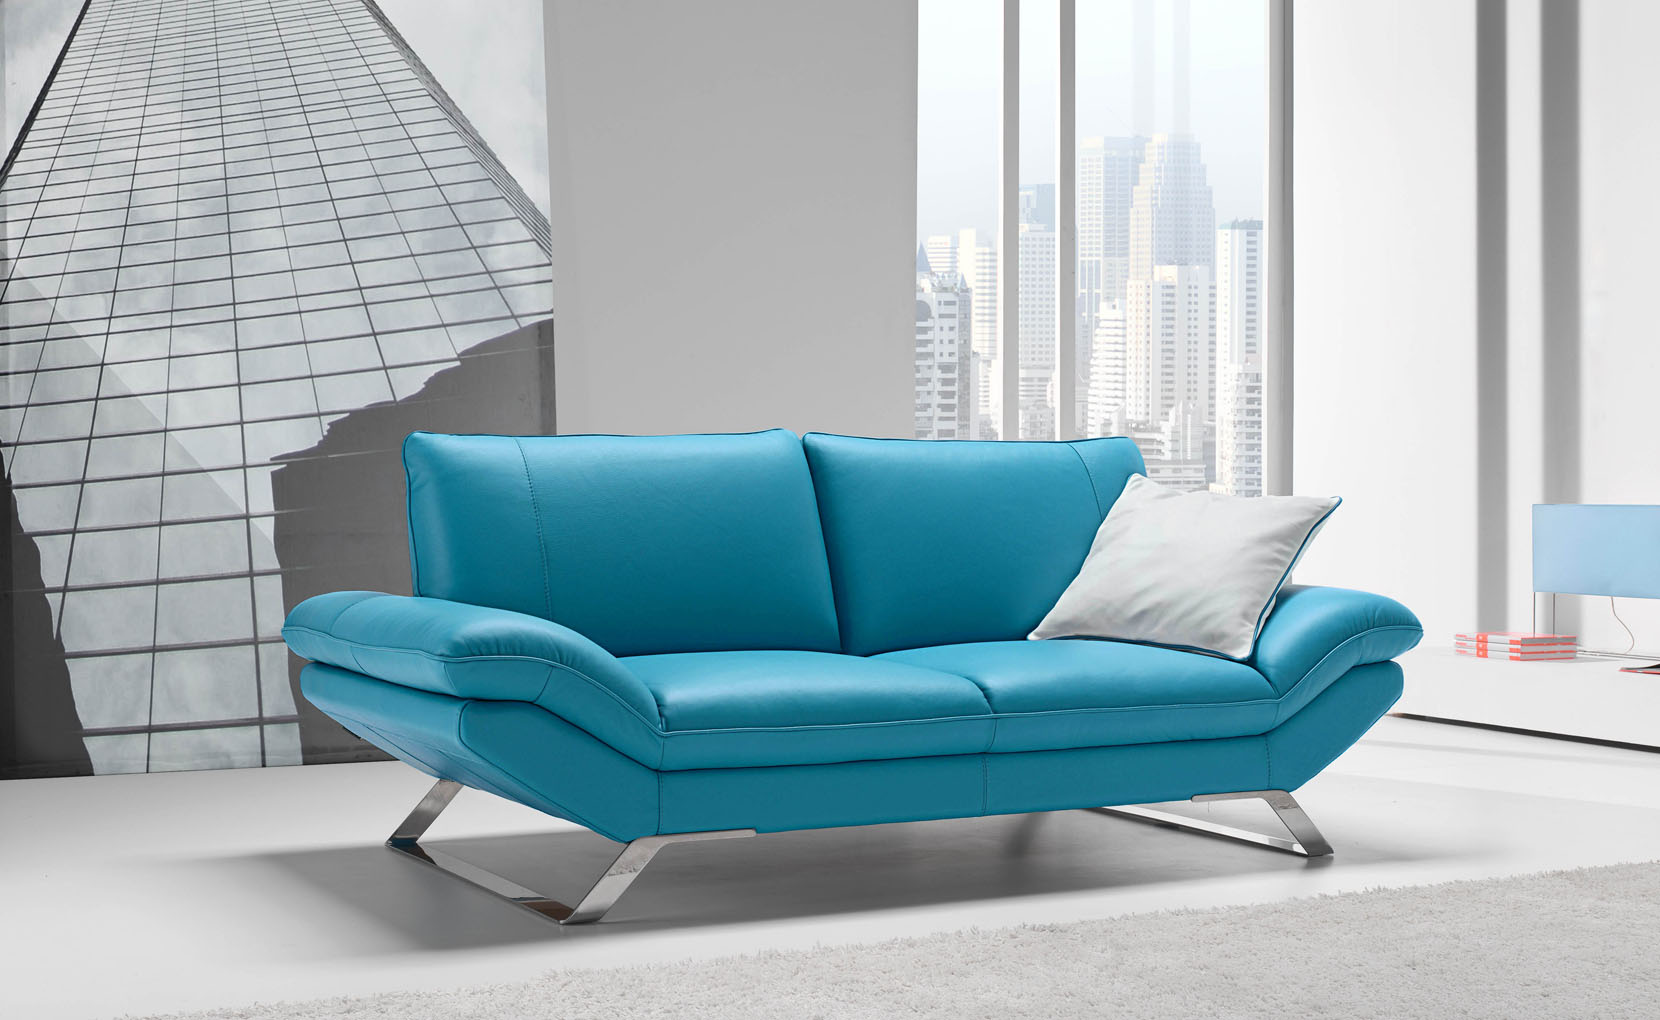 Ego Italiano Sofa Available At The